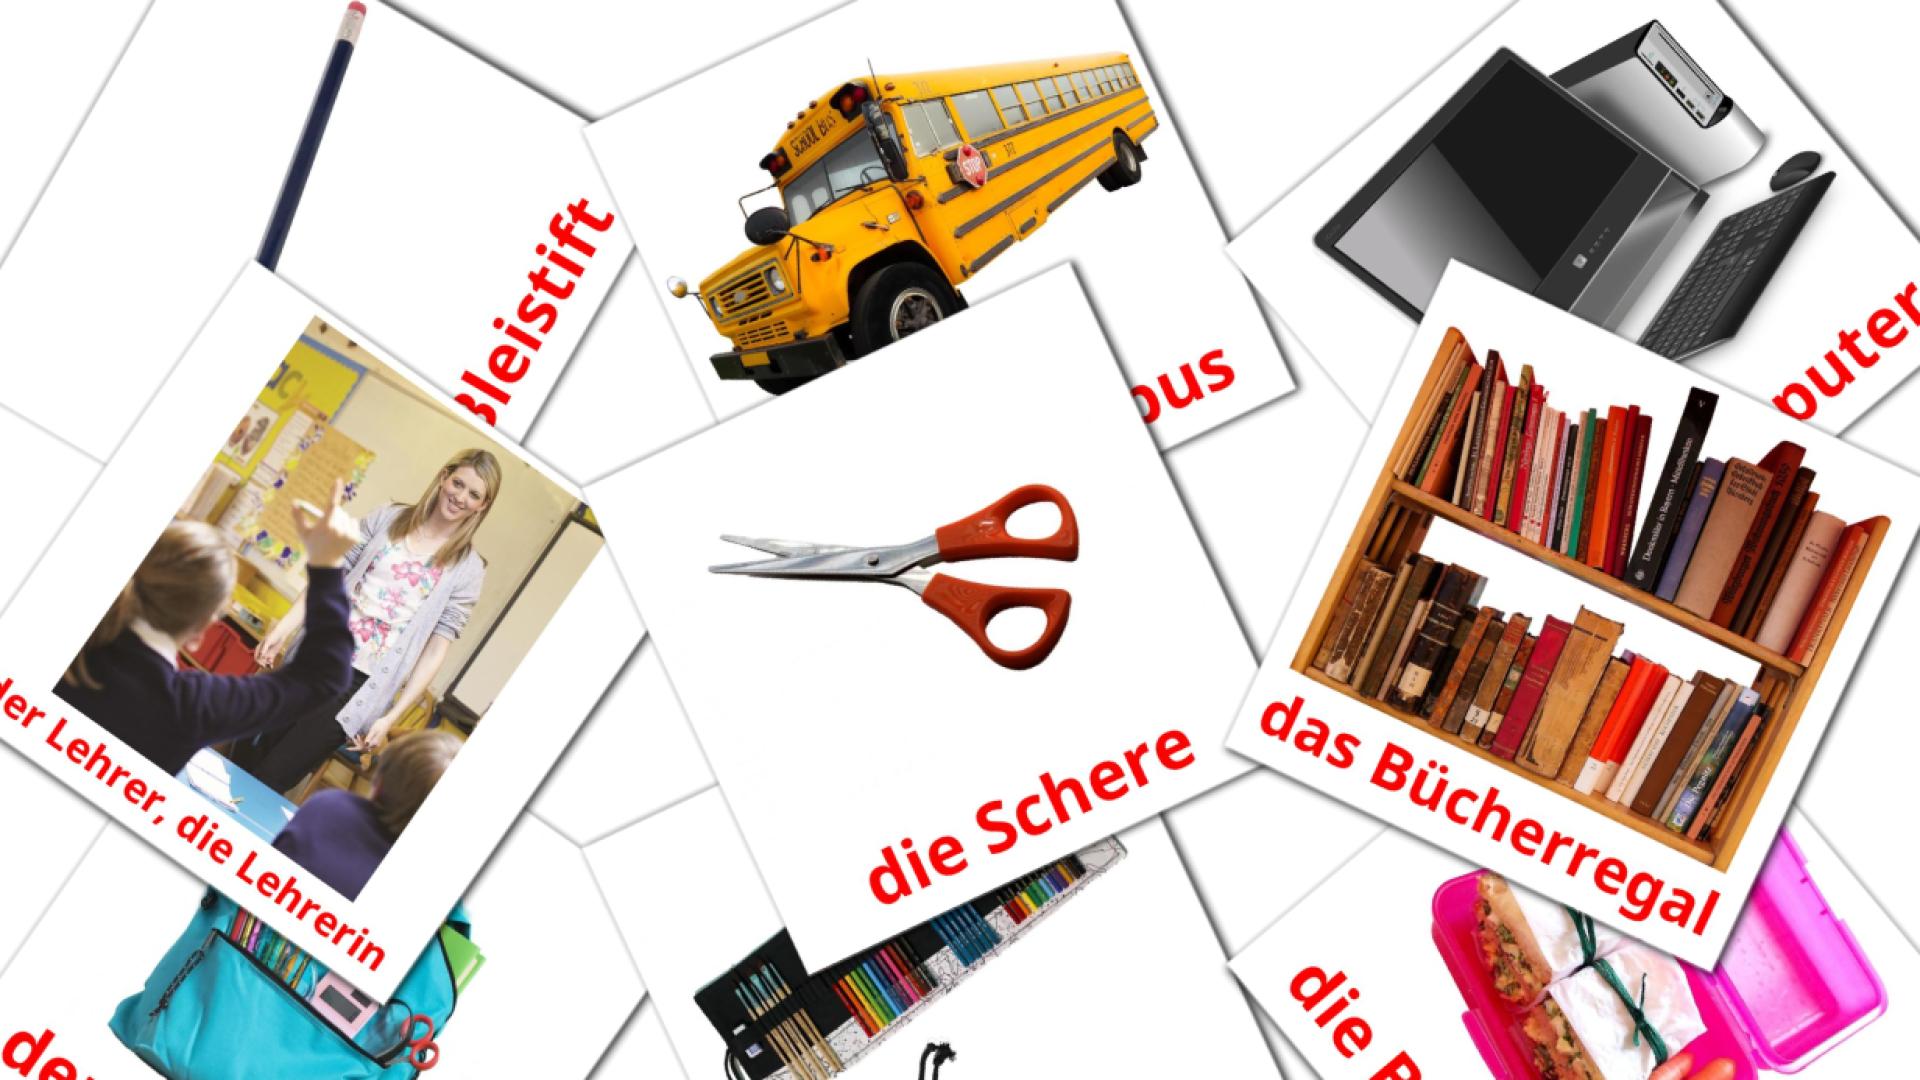 Objetos de sala de aula - Cartões de vocabulário alemão